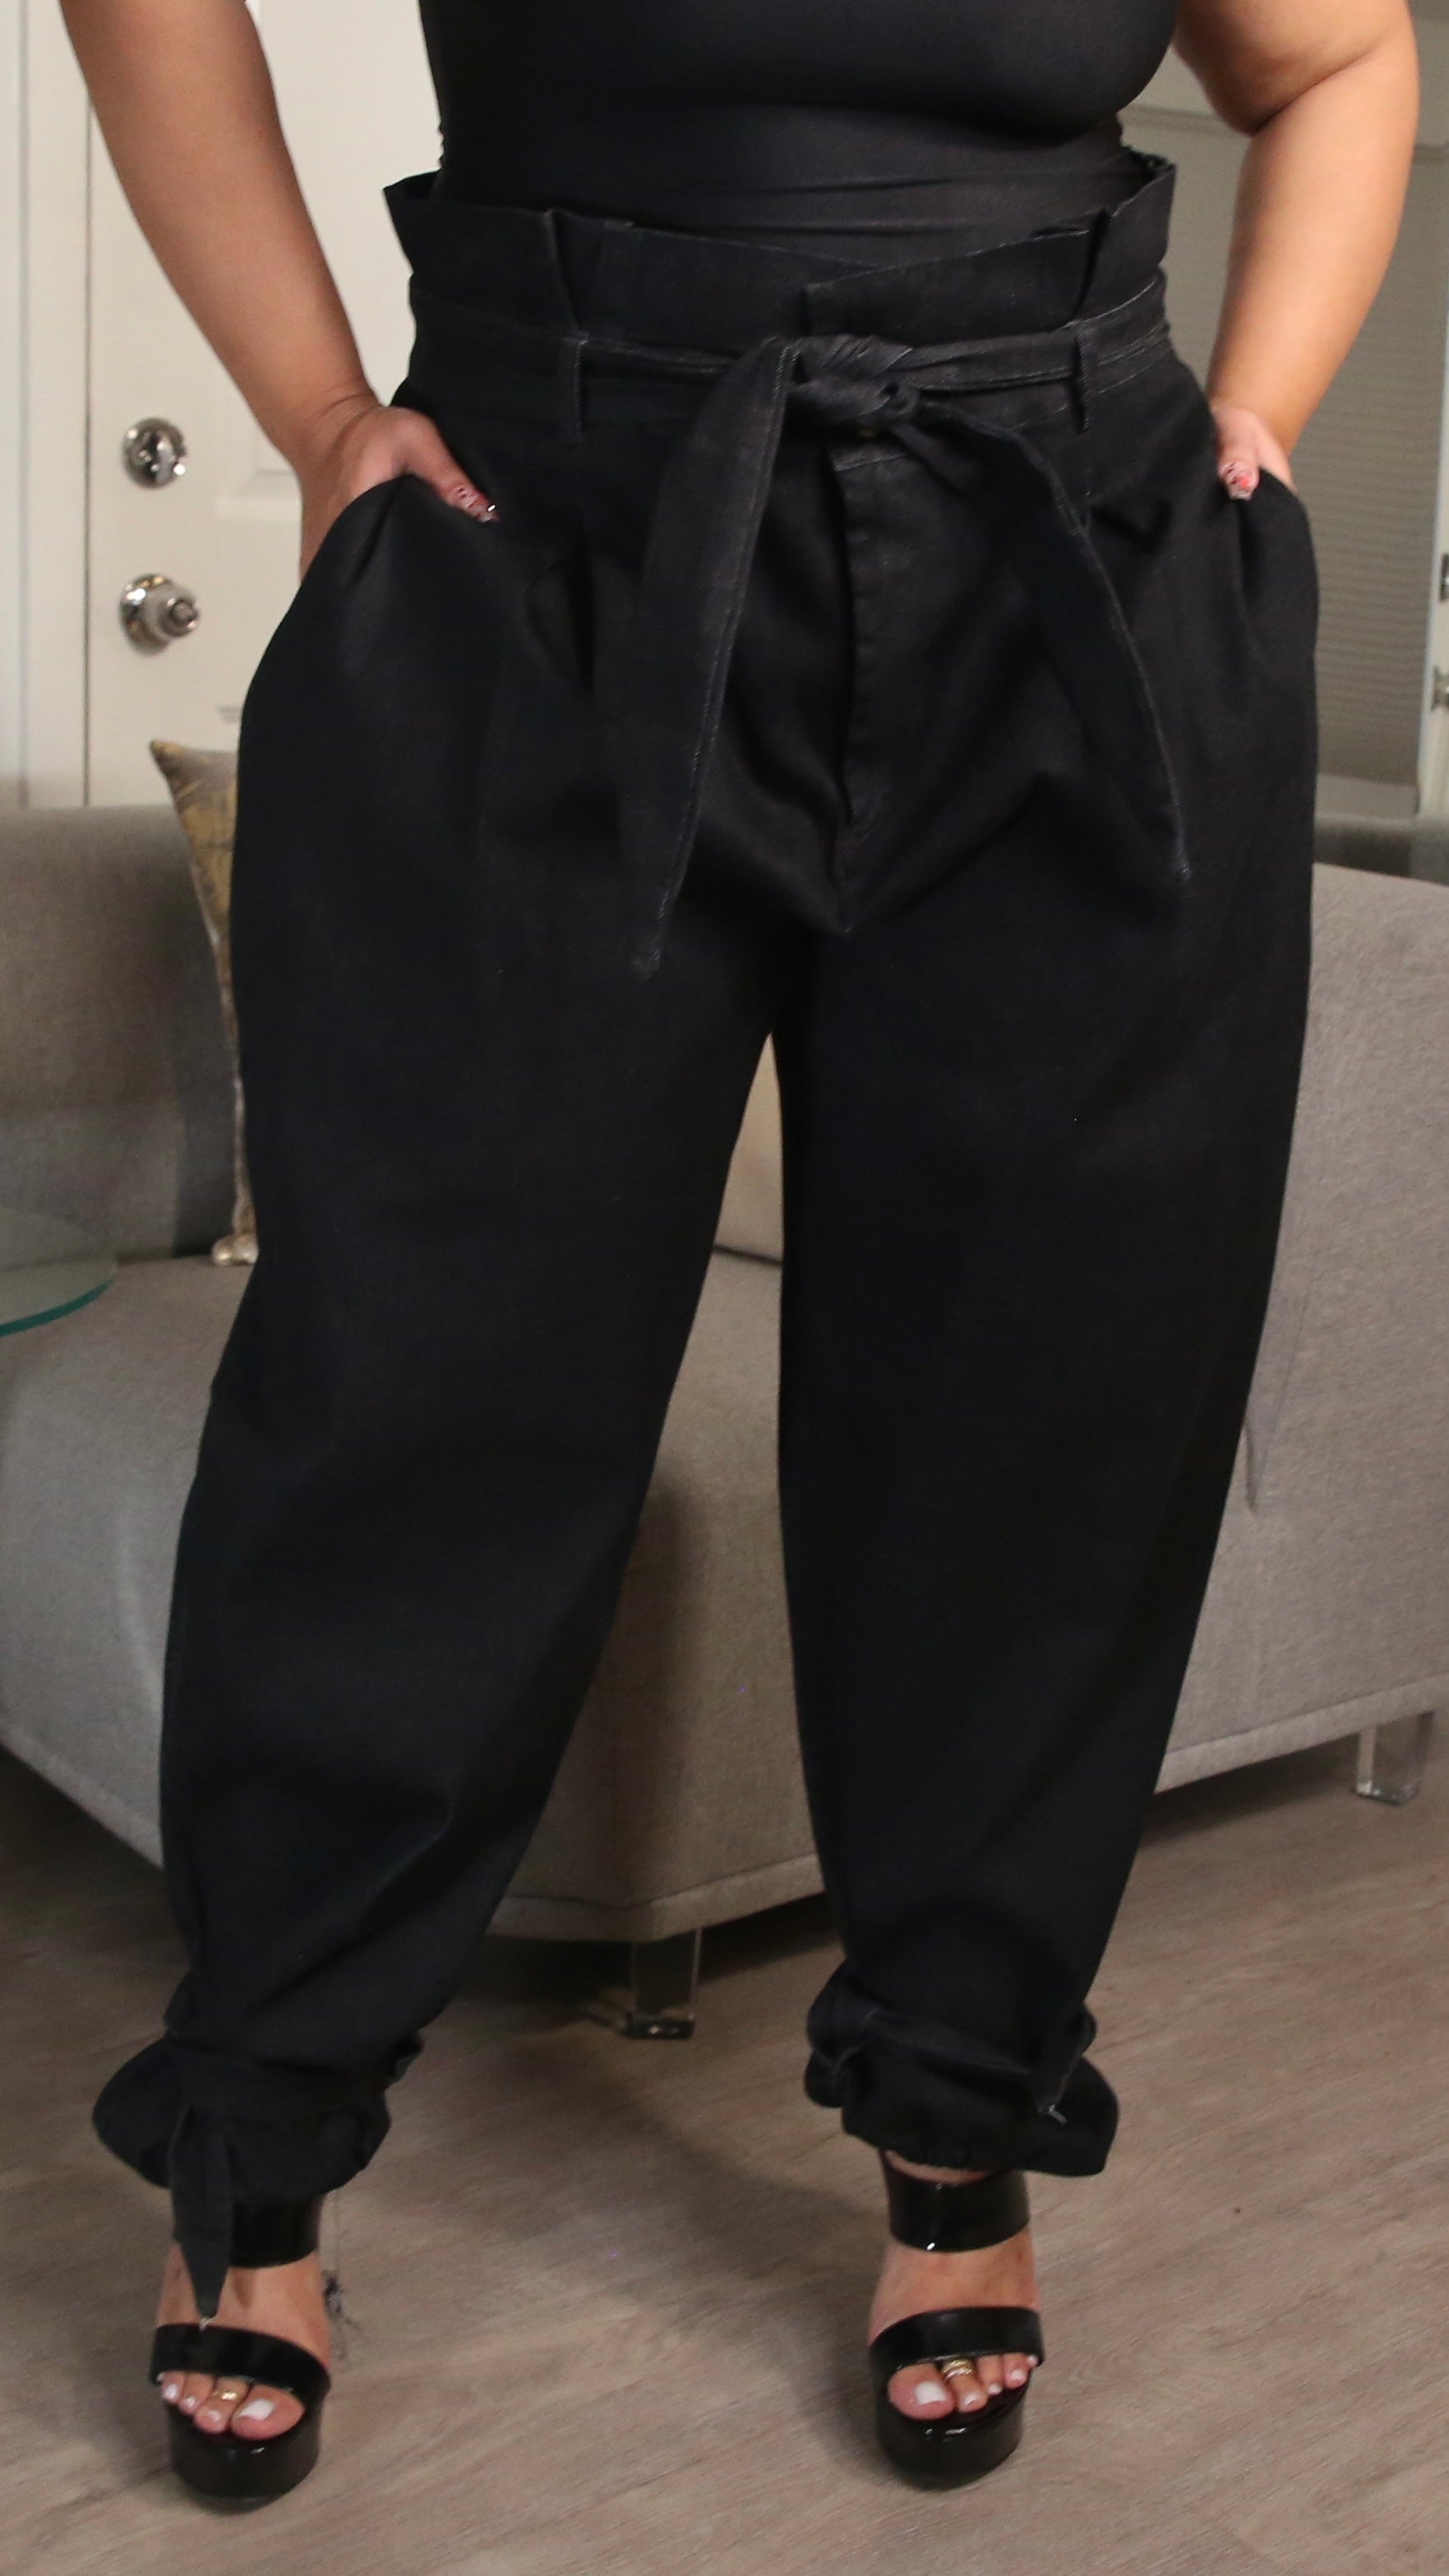 Plus Size Pants 1x 2x 3x – Boughie Curves